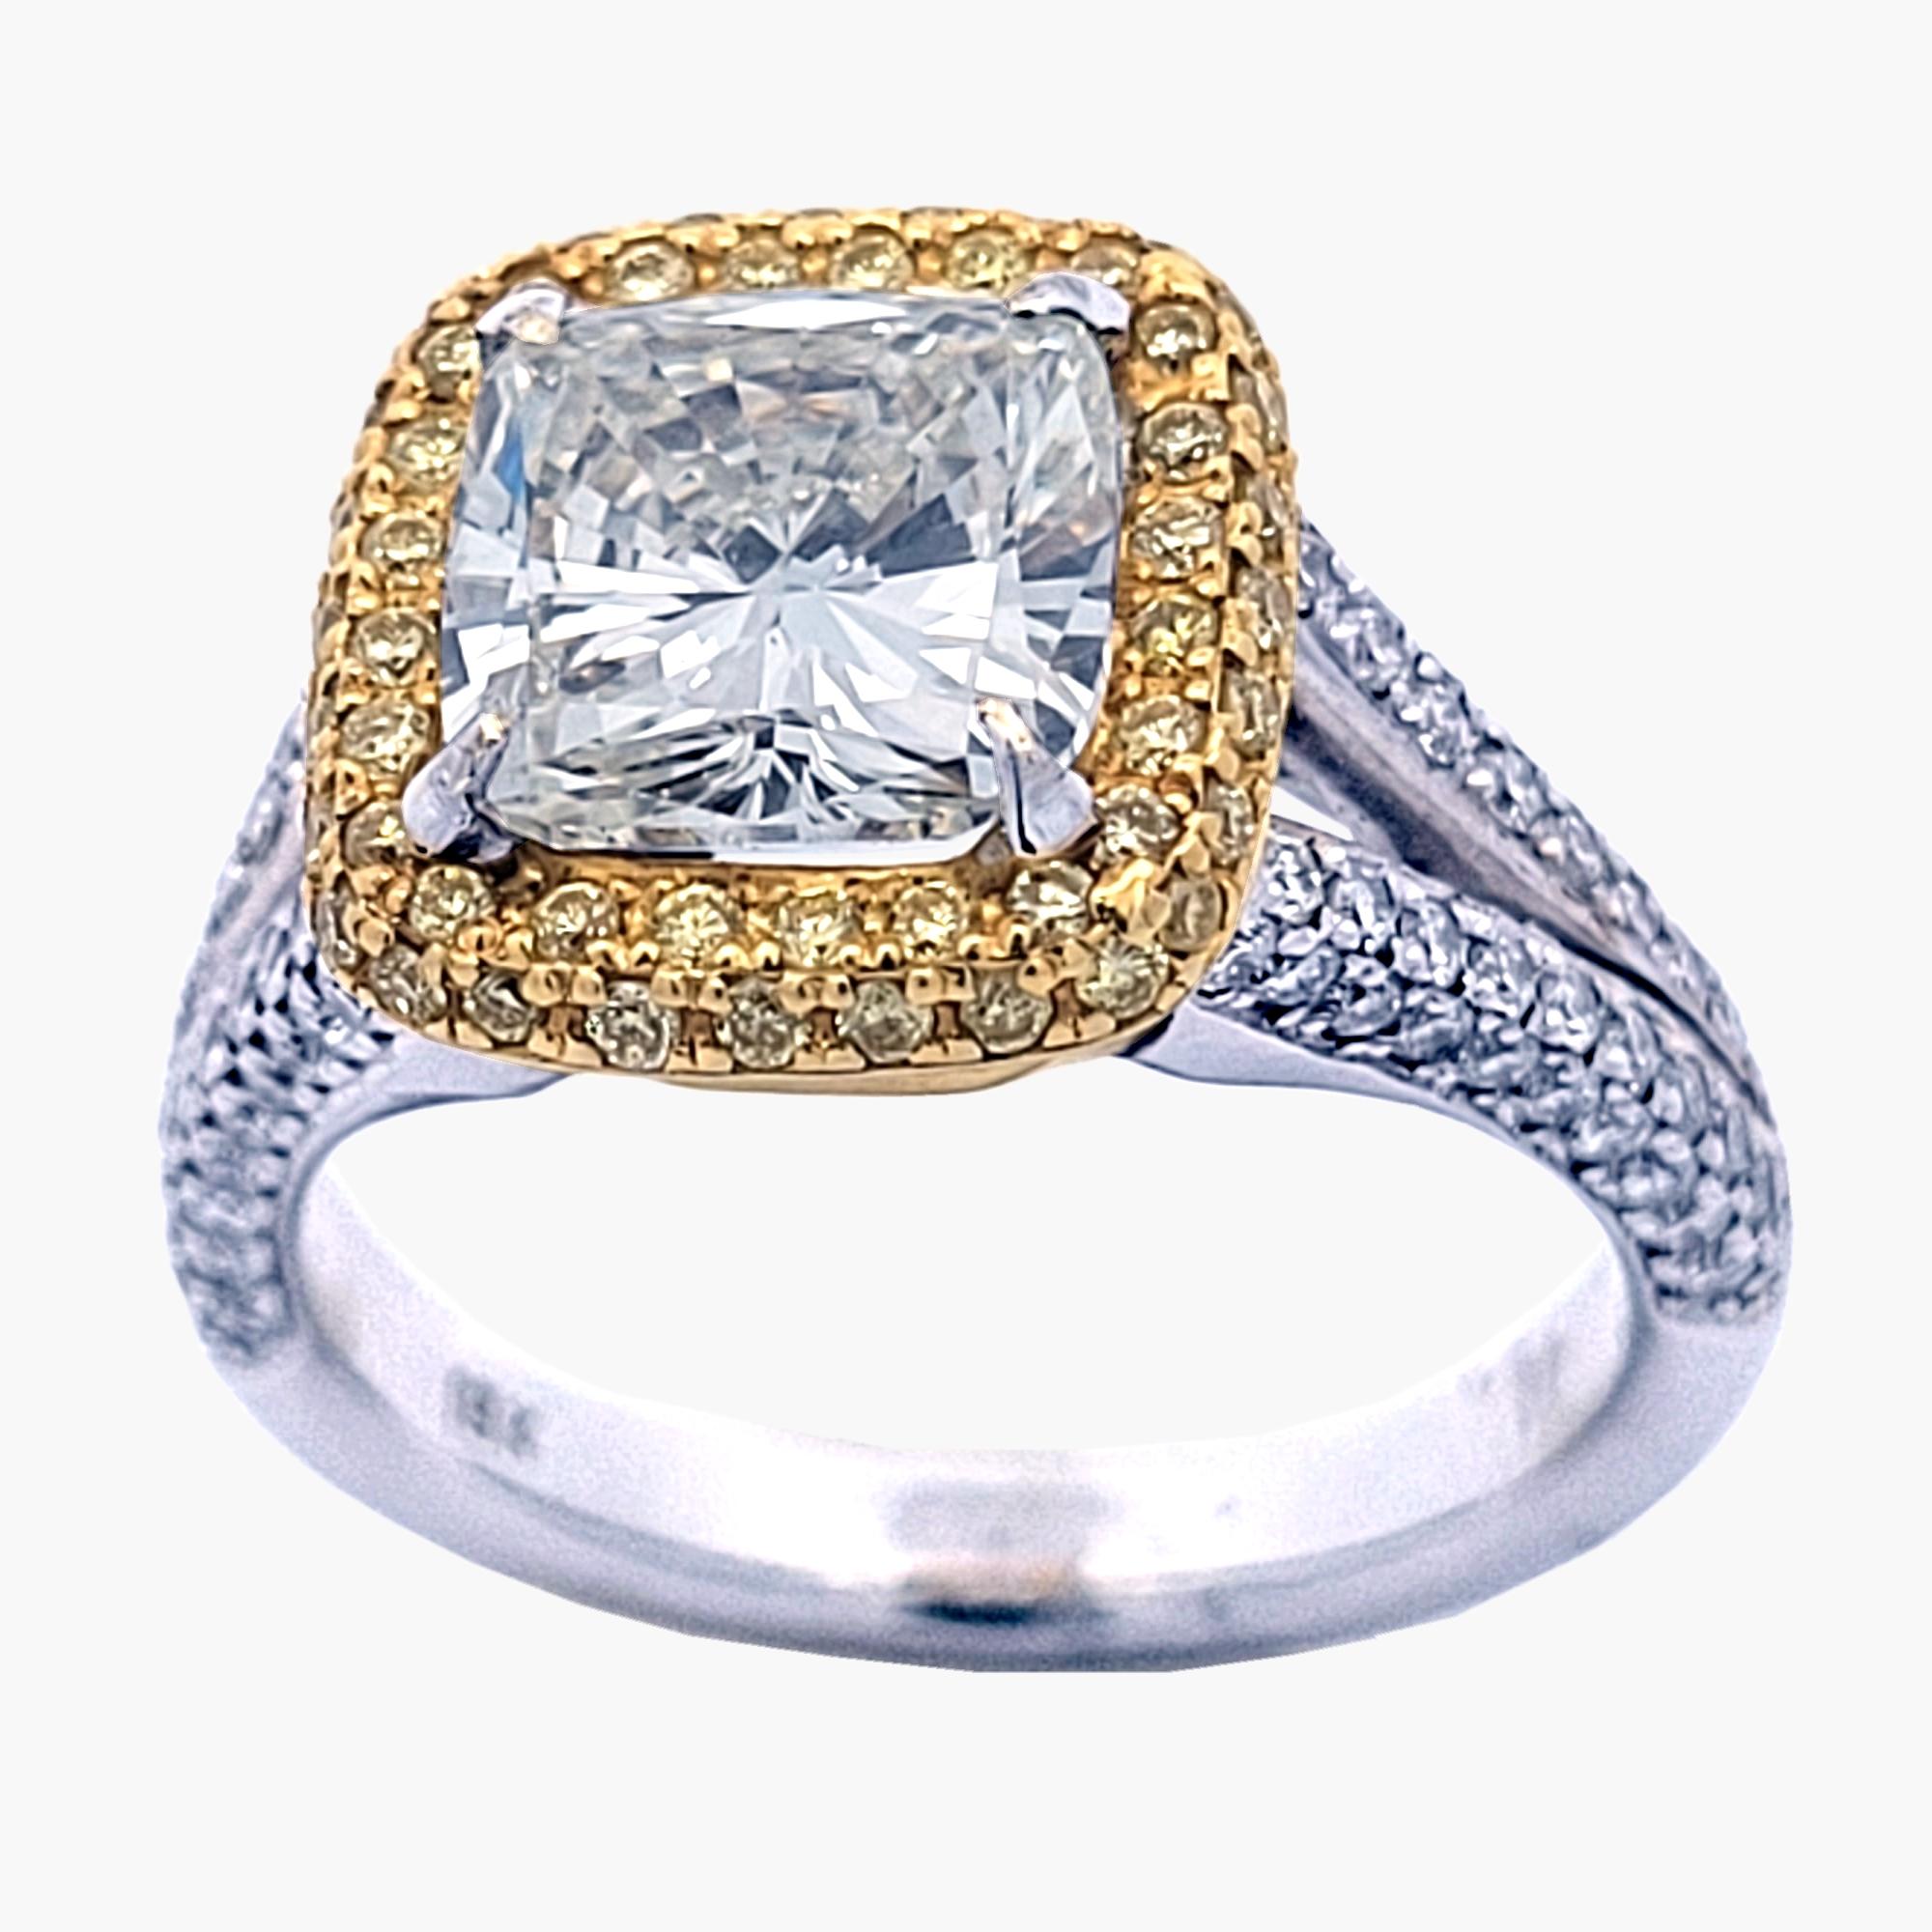 Un magnifique K/VS2 EGL Certifié 2.08 Ct  Diamant central de taille carrée et coussin, de couleur Nature, serti dans une magnifique bague de fiançailles de 18k blanc deux tons avec pavage et halo. Le halo est serti de diamants jaunes. Poids total de